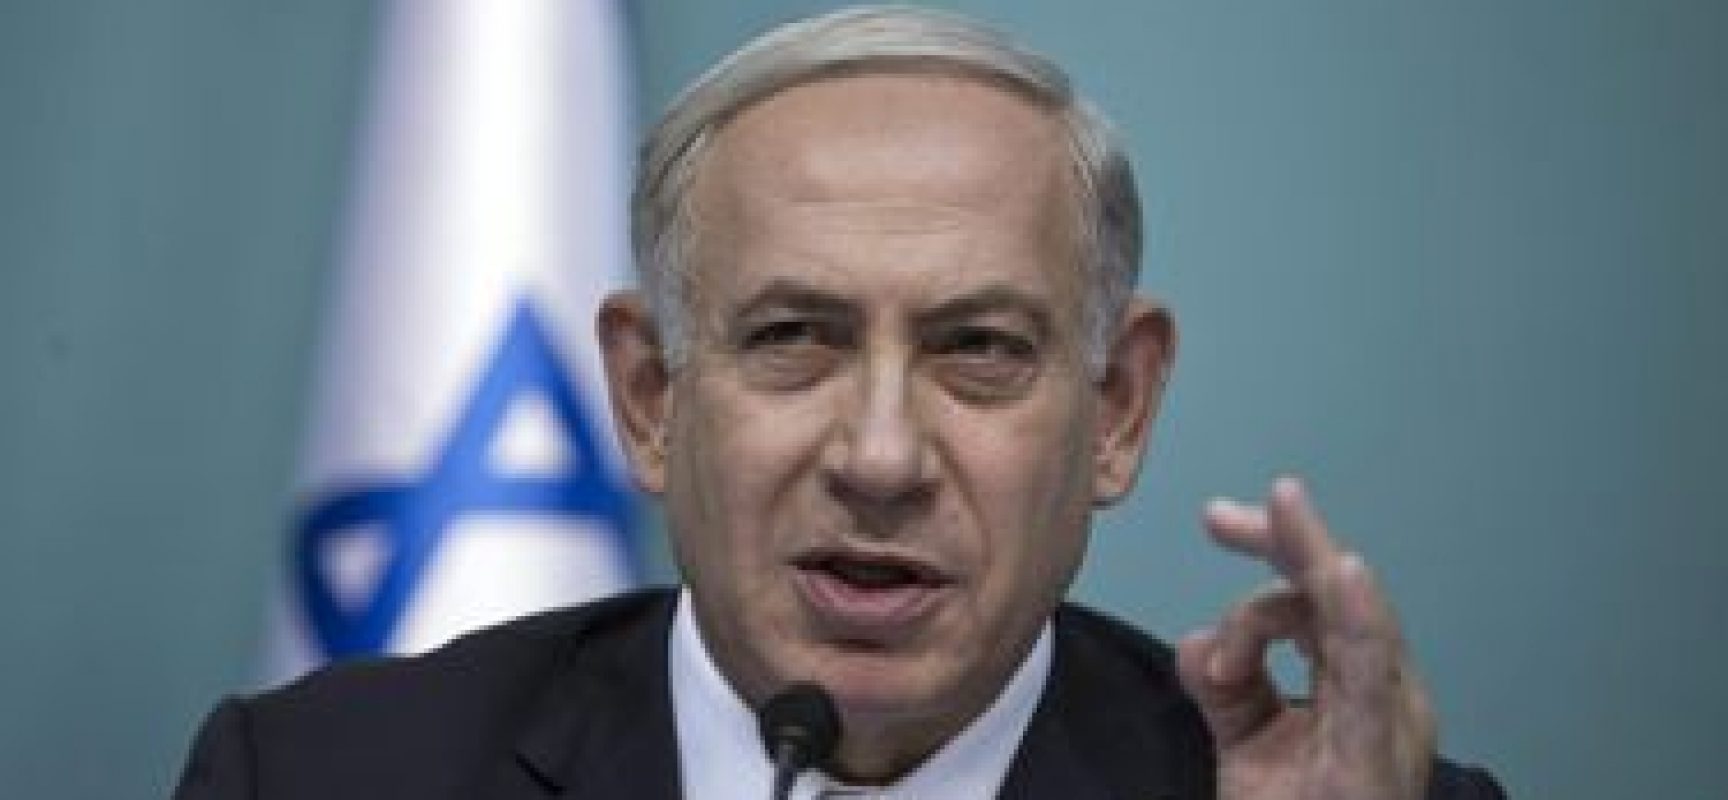 Polícia recomenda que Netanyahu seja acusado por corrupção